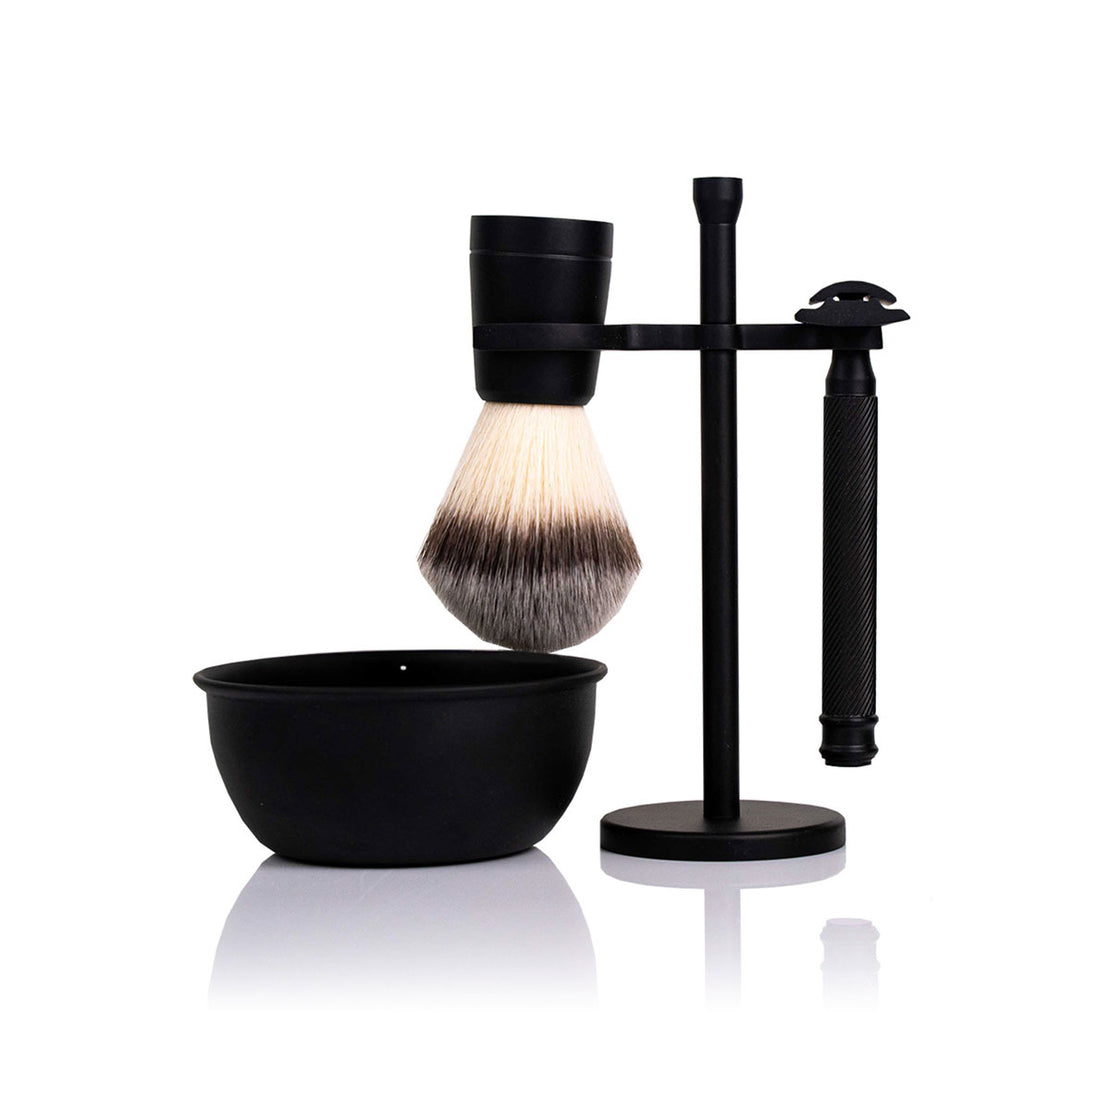 NEW: Shaving set for wet shaving | Safety razor, shaving brush, shaving bowl & free shaving soap